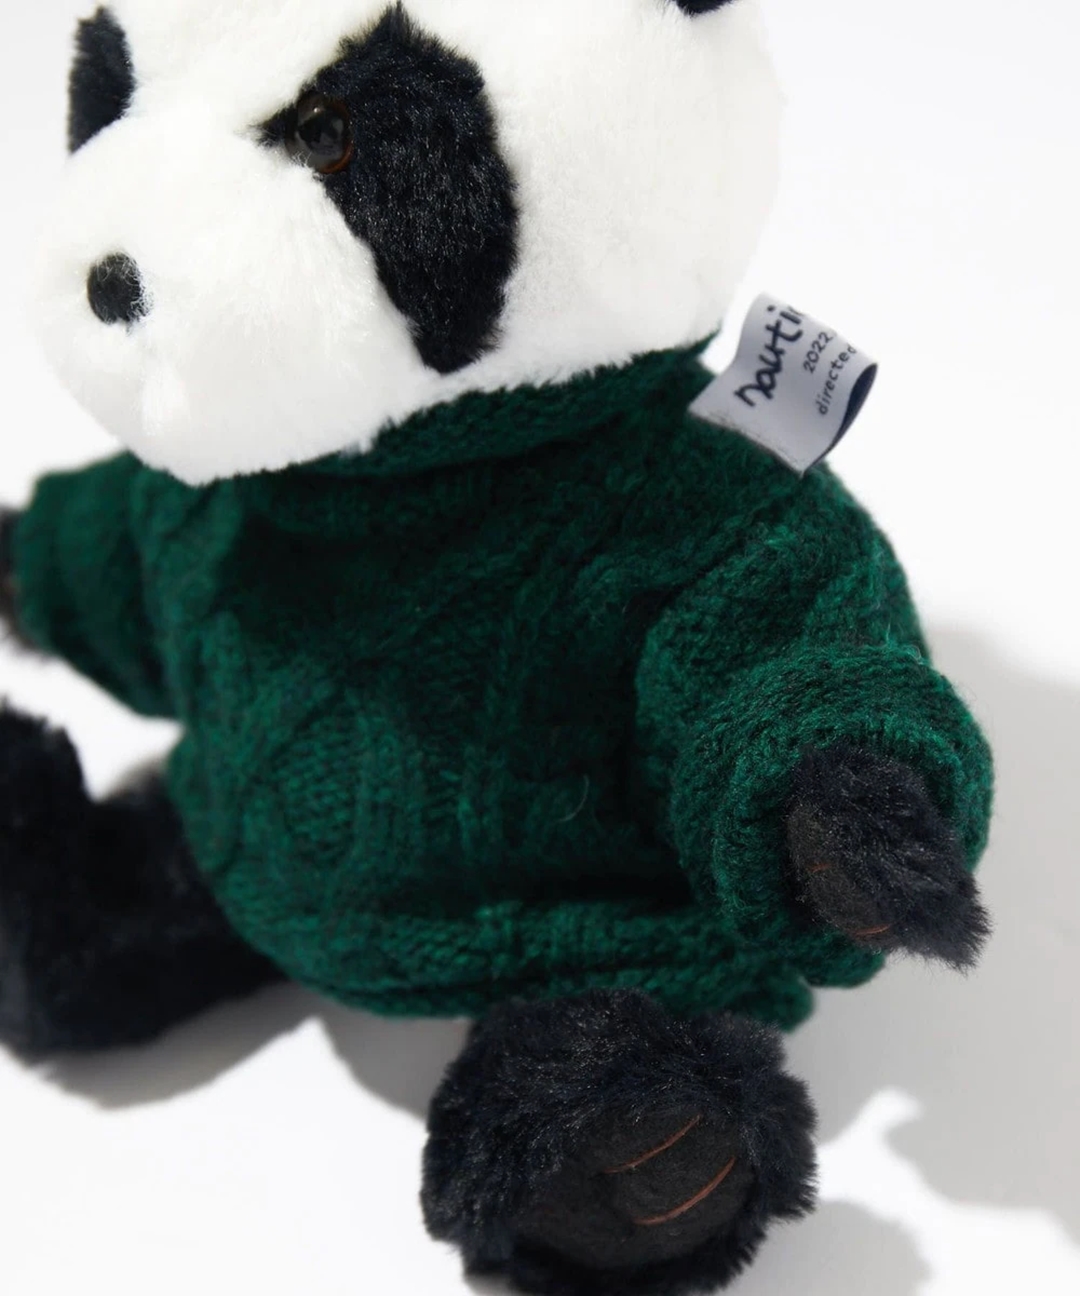 ファッションディレクターの長谷川昭雄氏のディレクション「NAUTICA/ノーティカ」からノベルティとして制作したパンダのぬいぐるみが発売！